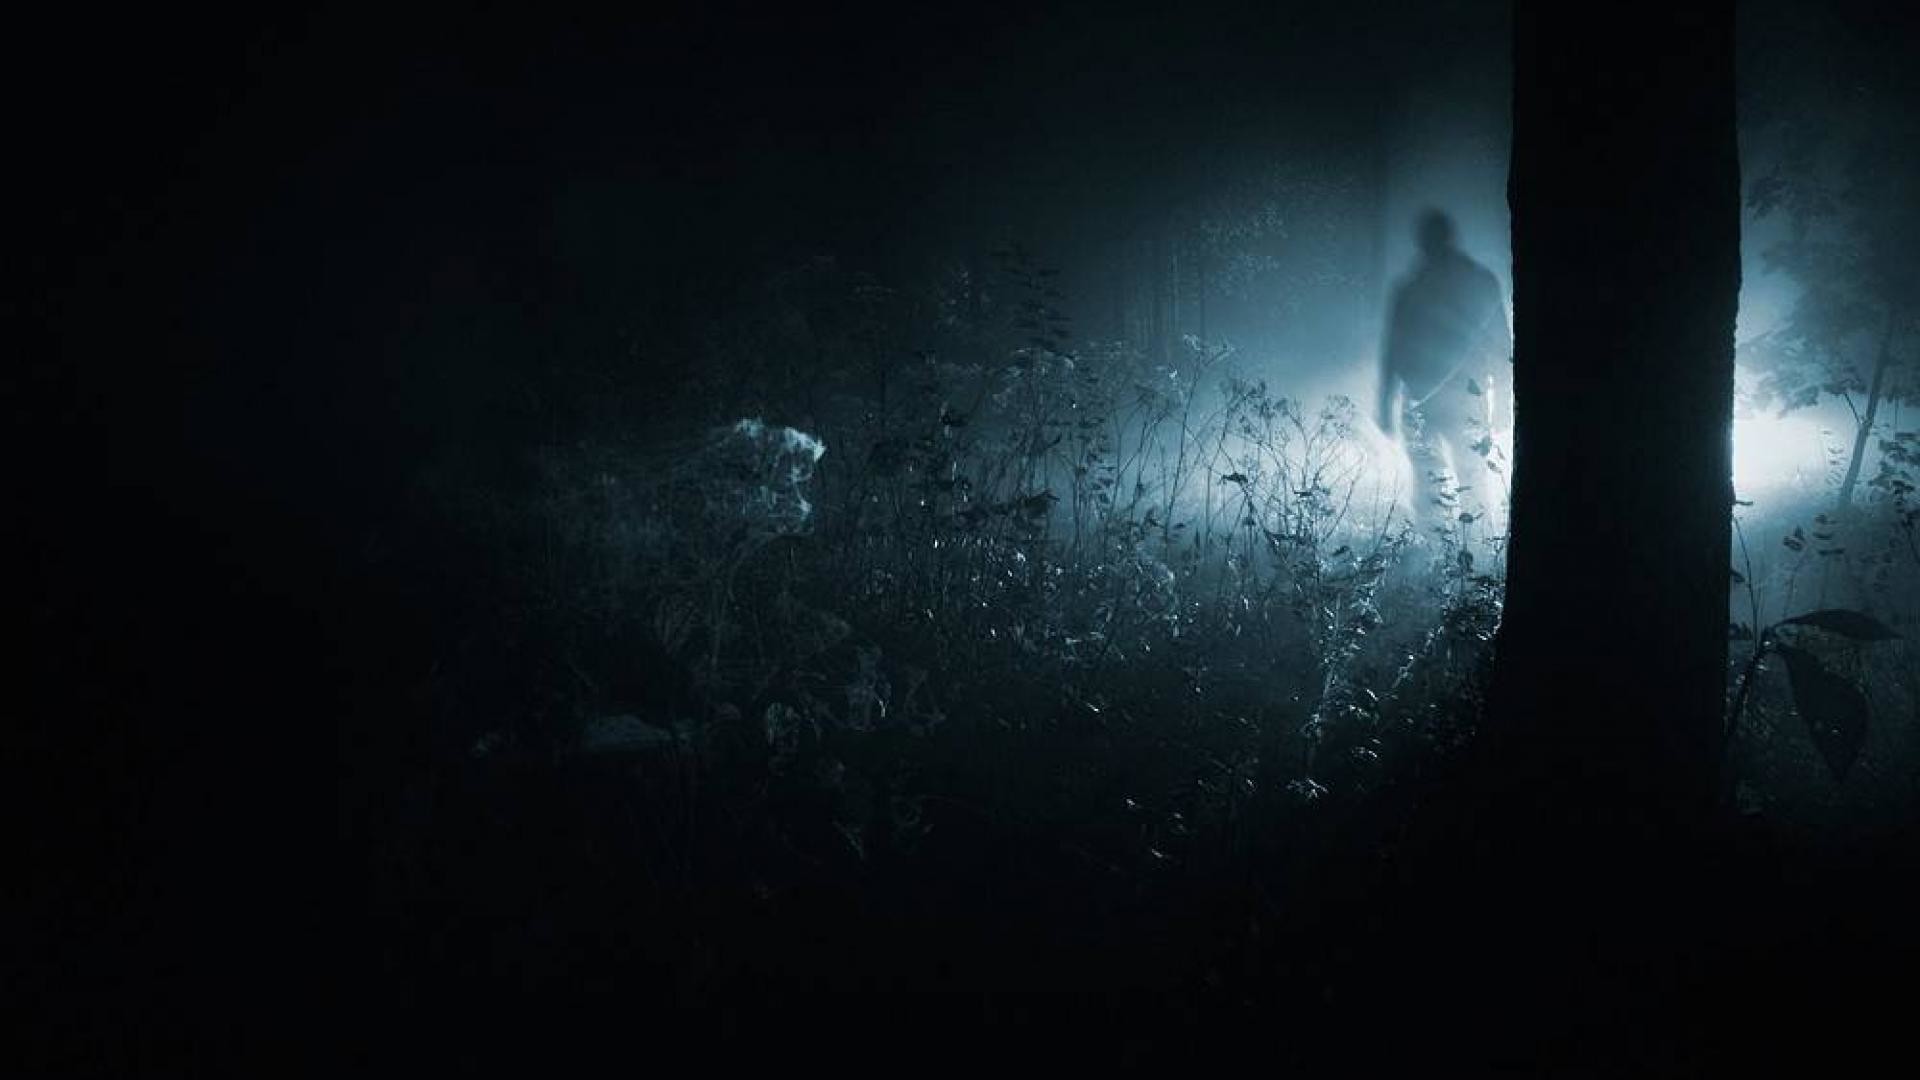 Dark Figure In The Woods , HD Wallpaper & Backgrounds